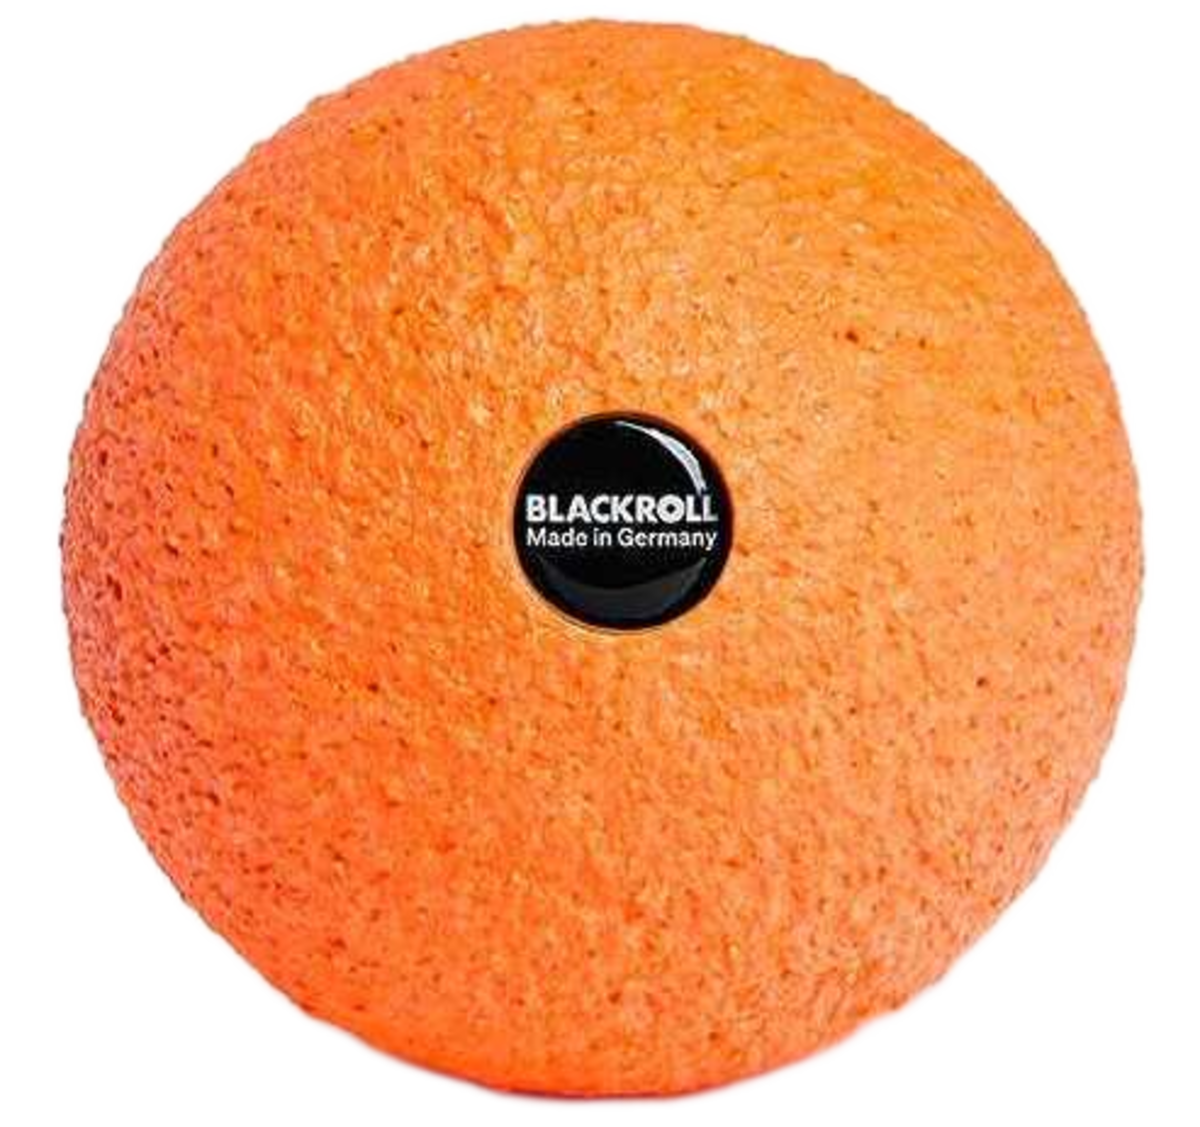 Blackroll Fascia Ball 08CM in Orange Color